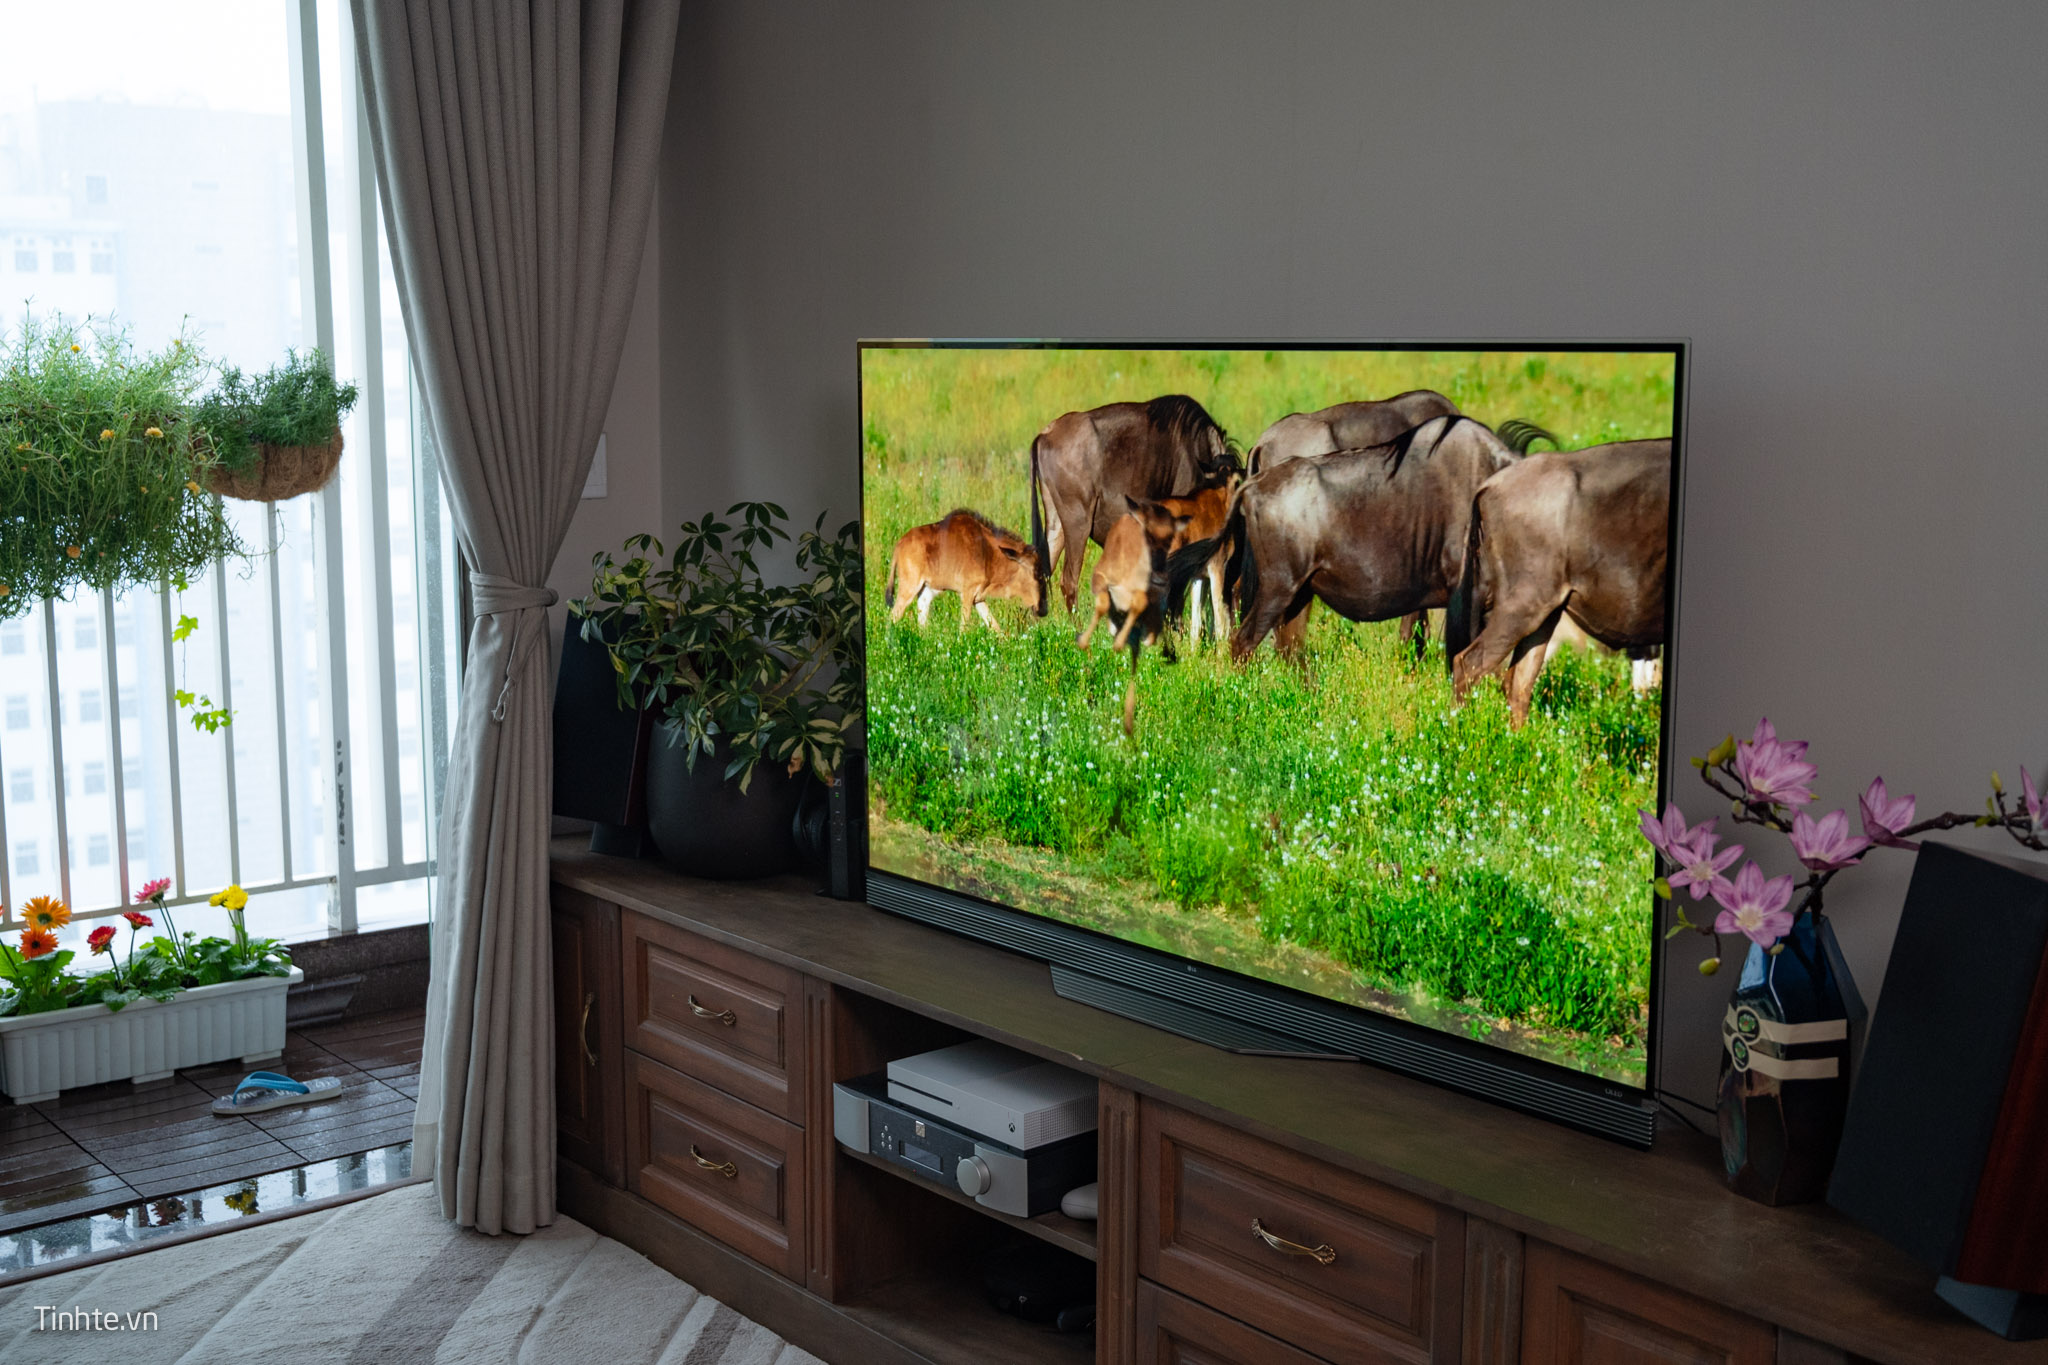 Đánh giá TV LG OLED E6 65" sau hơn 3 năm sử dụng: vẫn tốt chán